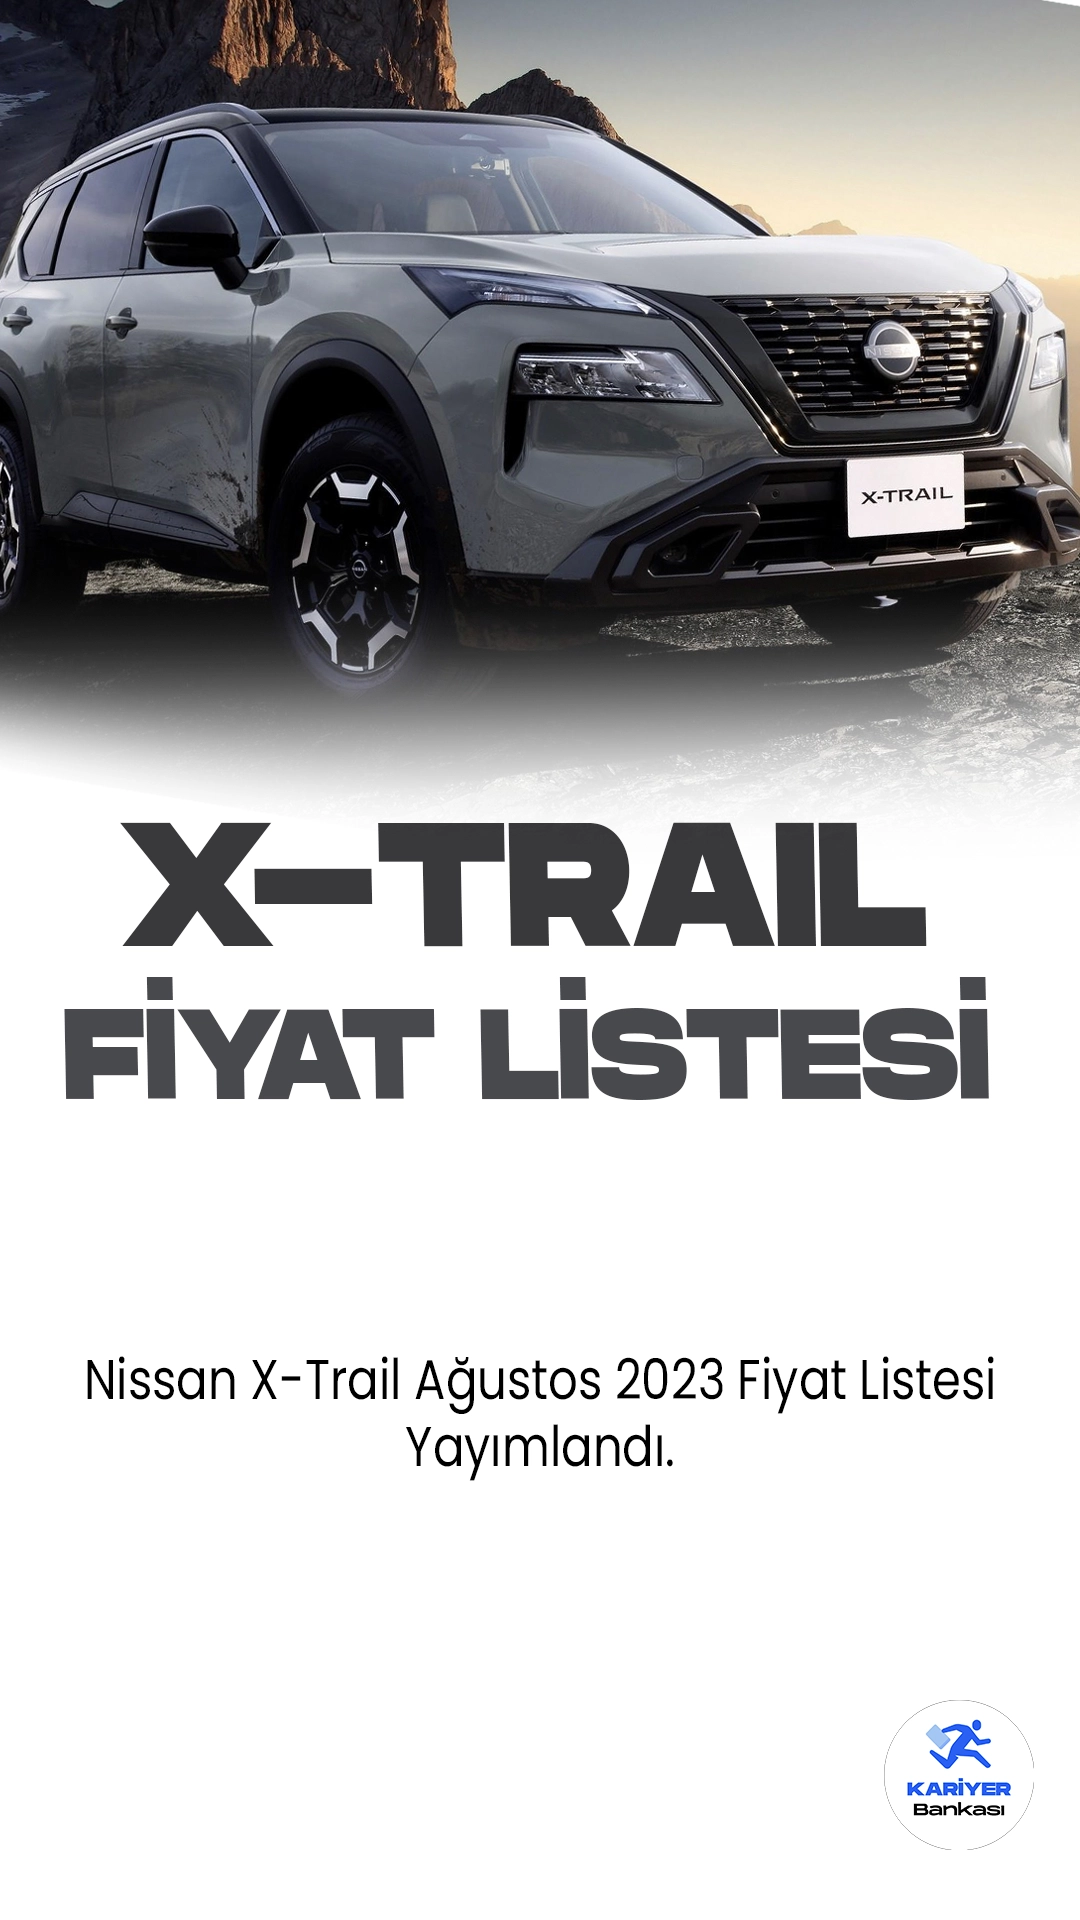 Nissan X-Trail Ağustos 2023 Fiyat Listesi Yayımlandı!Japon otomobil üreticisi Nissan'ın kompakt SUV segmentindeki iddialı modeli X-Trail, fonksiyonelliği ve şık tasarımıyla dikkat çekiyor. Geniş iç mekanı, yüksek sürüş konforu ve güçlü motor seçenekleri ile kullanıcılarına geniş bir seçenek yelpazesi sunuyor. İleri teknoloji özellikleri arasında akıllı güvenlik sistemleri, dokunmatik ekranlı bilgi-eğlence sistemi ve sezgisel sürüş yardımcıları yer alıyor. Yüksek yakıt verimliliği ve çevre dostu özellikleri, X-Trail'in çevre bilincine sahip sürücüler için çekici bir seçenek olduğunu vurguluyor.